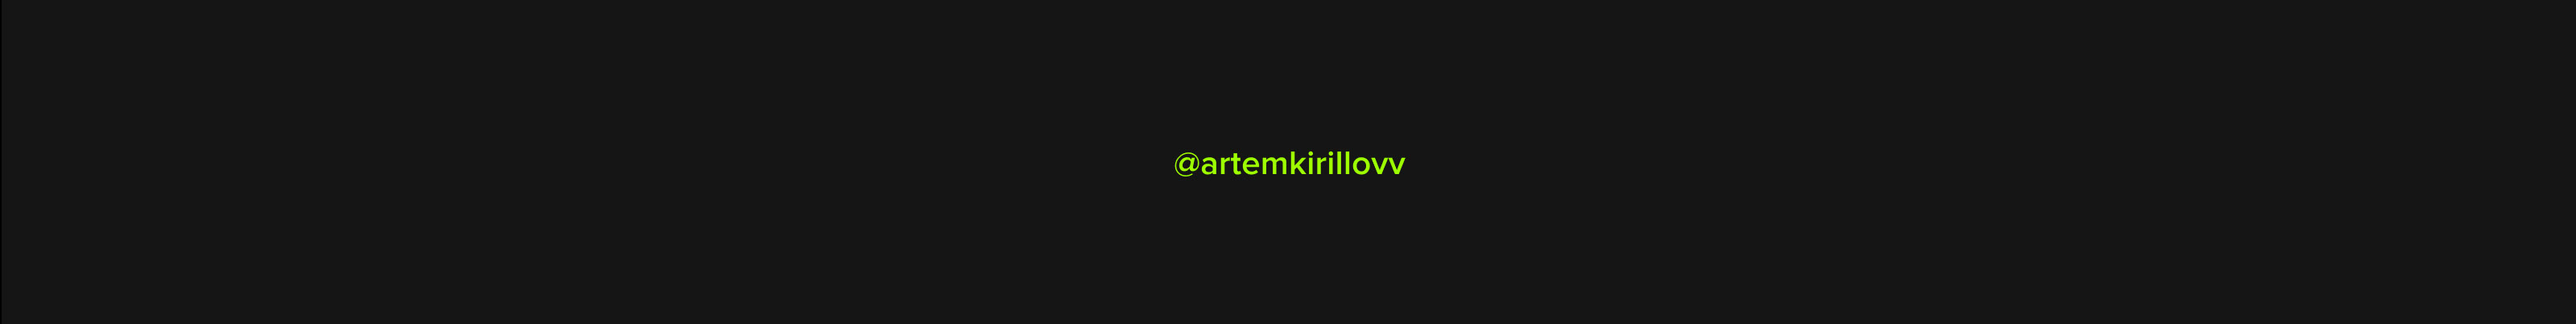 Artem Kirillov profil başlığı